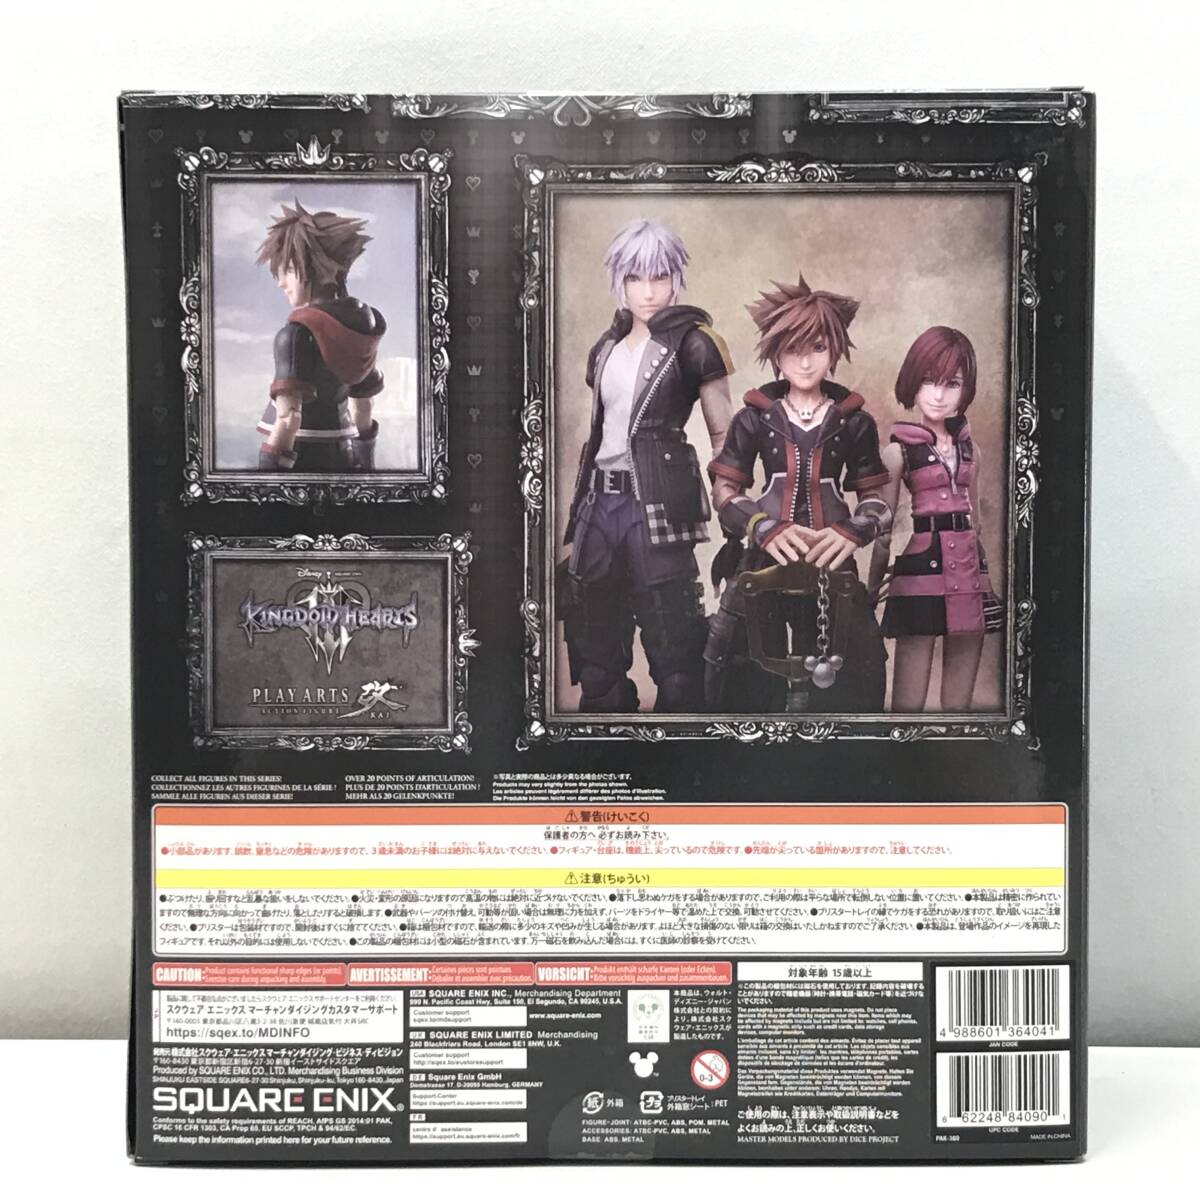 * не использовался товар * SQUARE ENIXsk одежда * enix фигурка Kingdom Hearts III PLAY ARTS модифицировано solaVer.2 DX версия нераспечатанный товар 